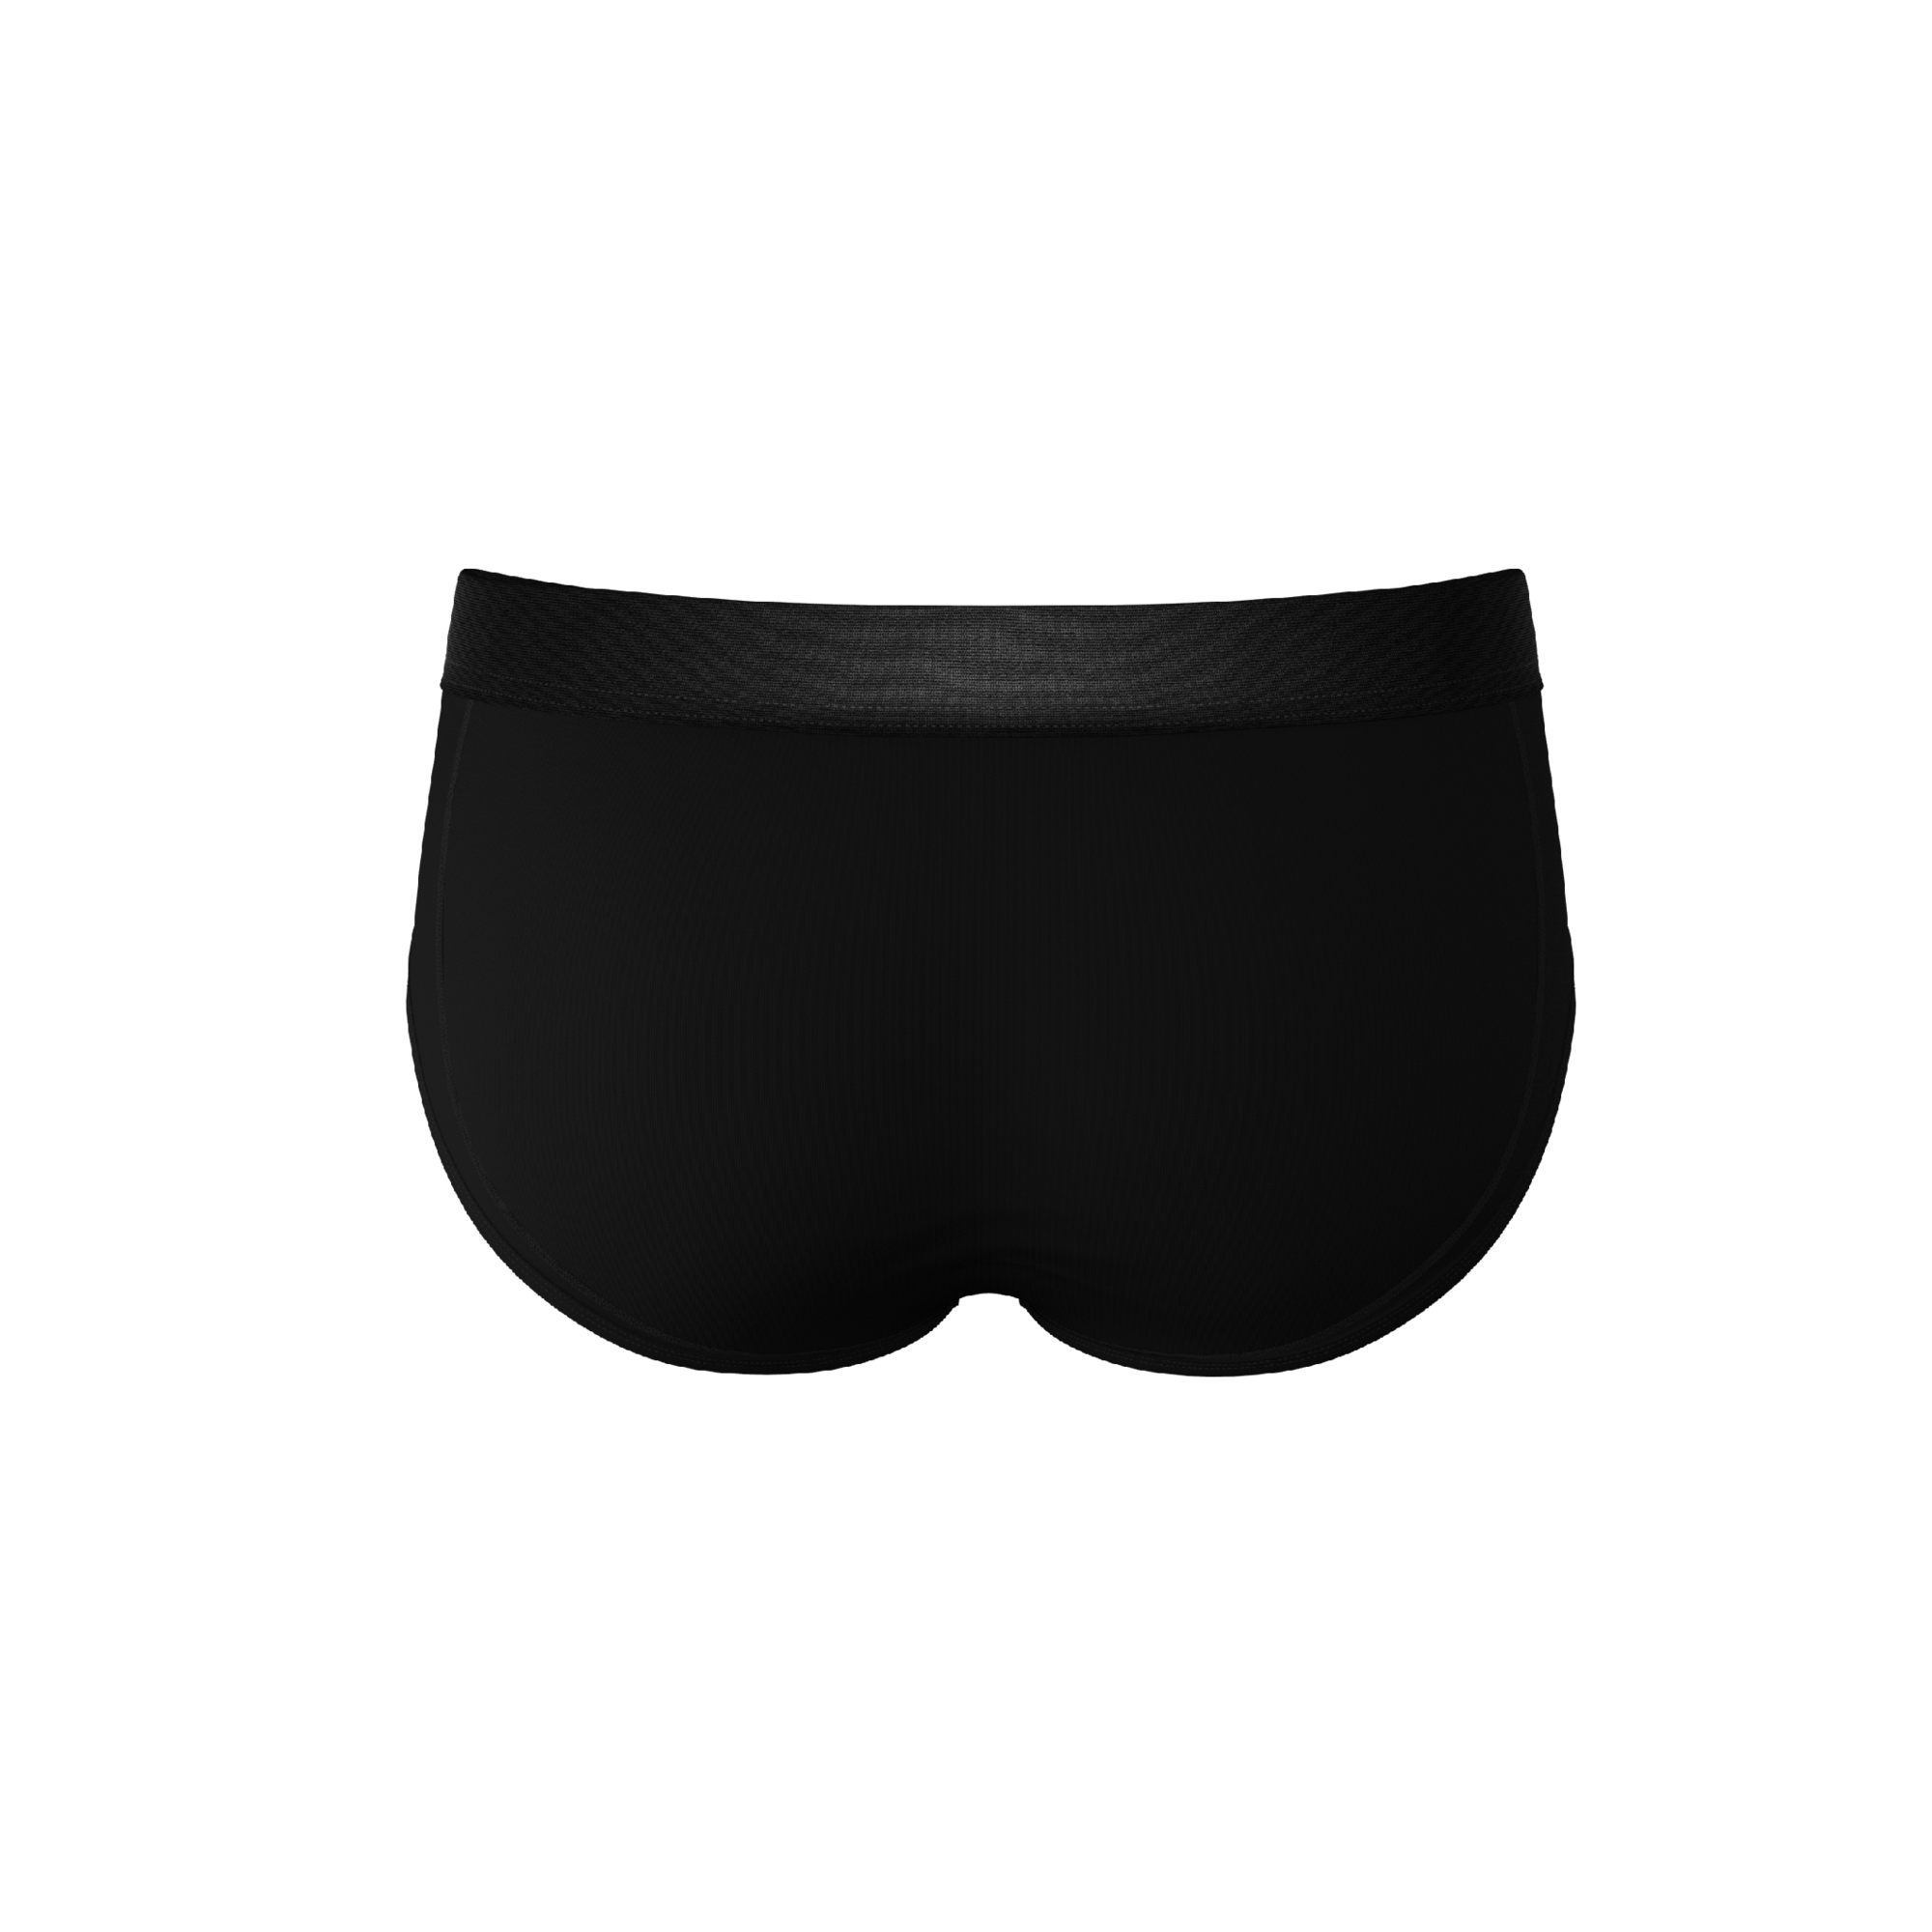 The Threat Level Midnight  Black Ball Hammock® Pouch Underwear Briefs 3  Pack